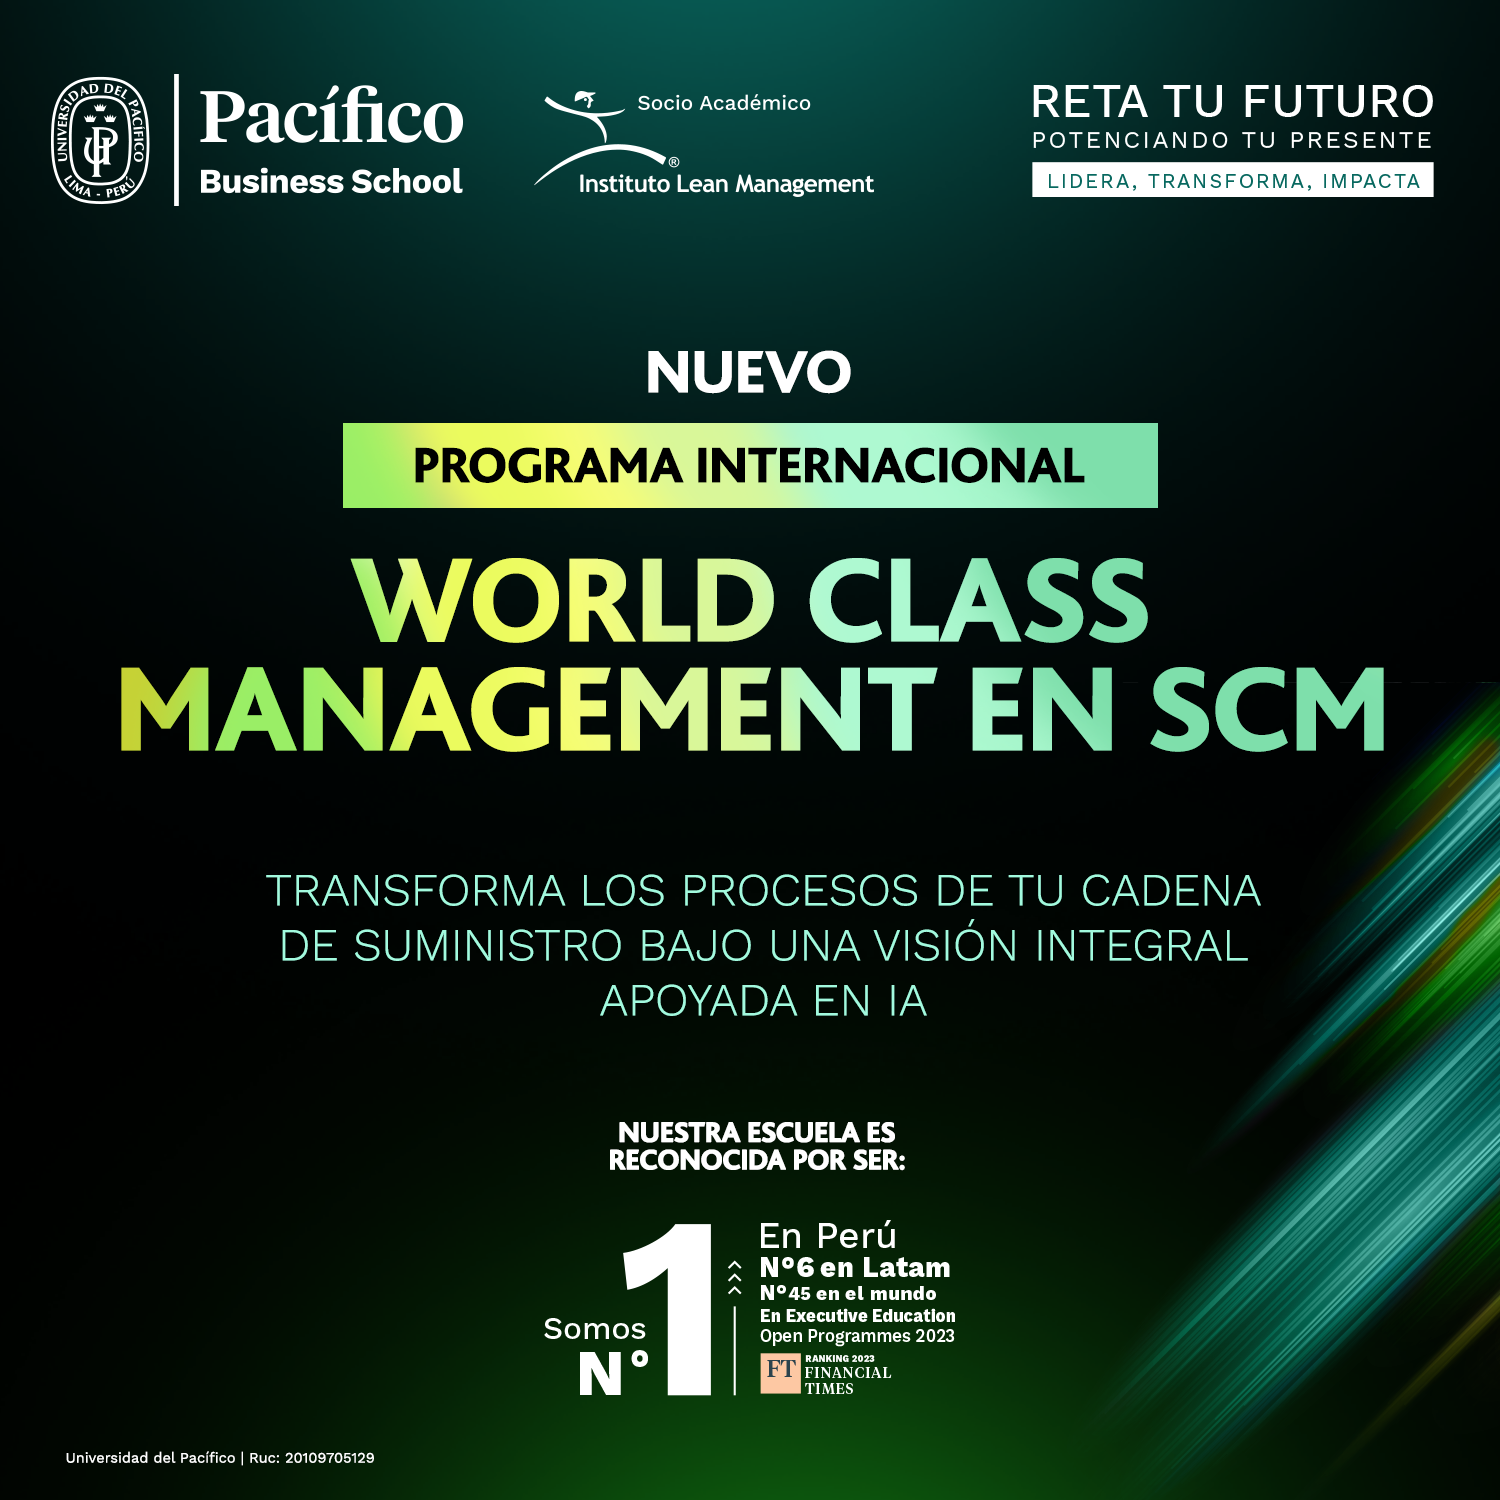 Universidad del Pacífico - Programa Internacional en World Class Management en SCM